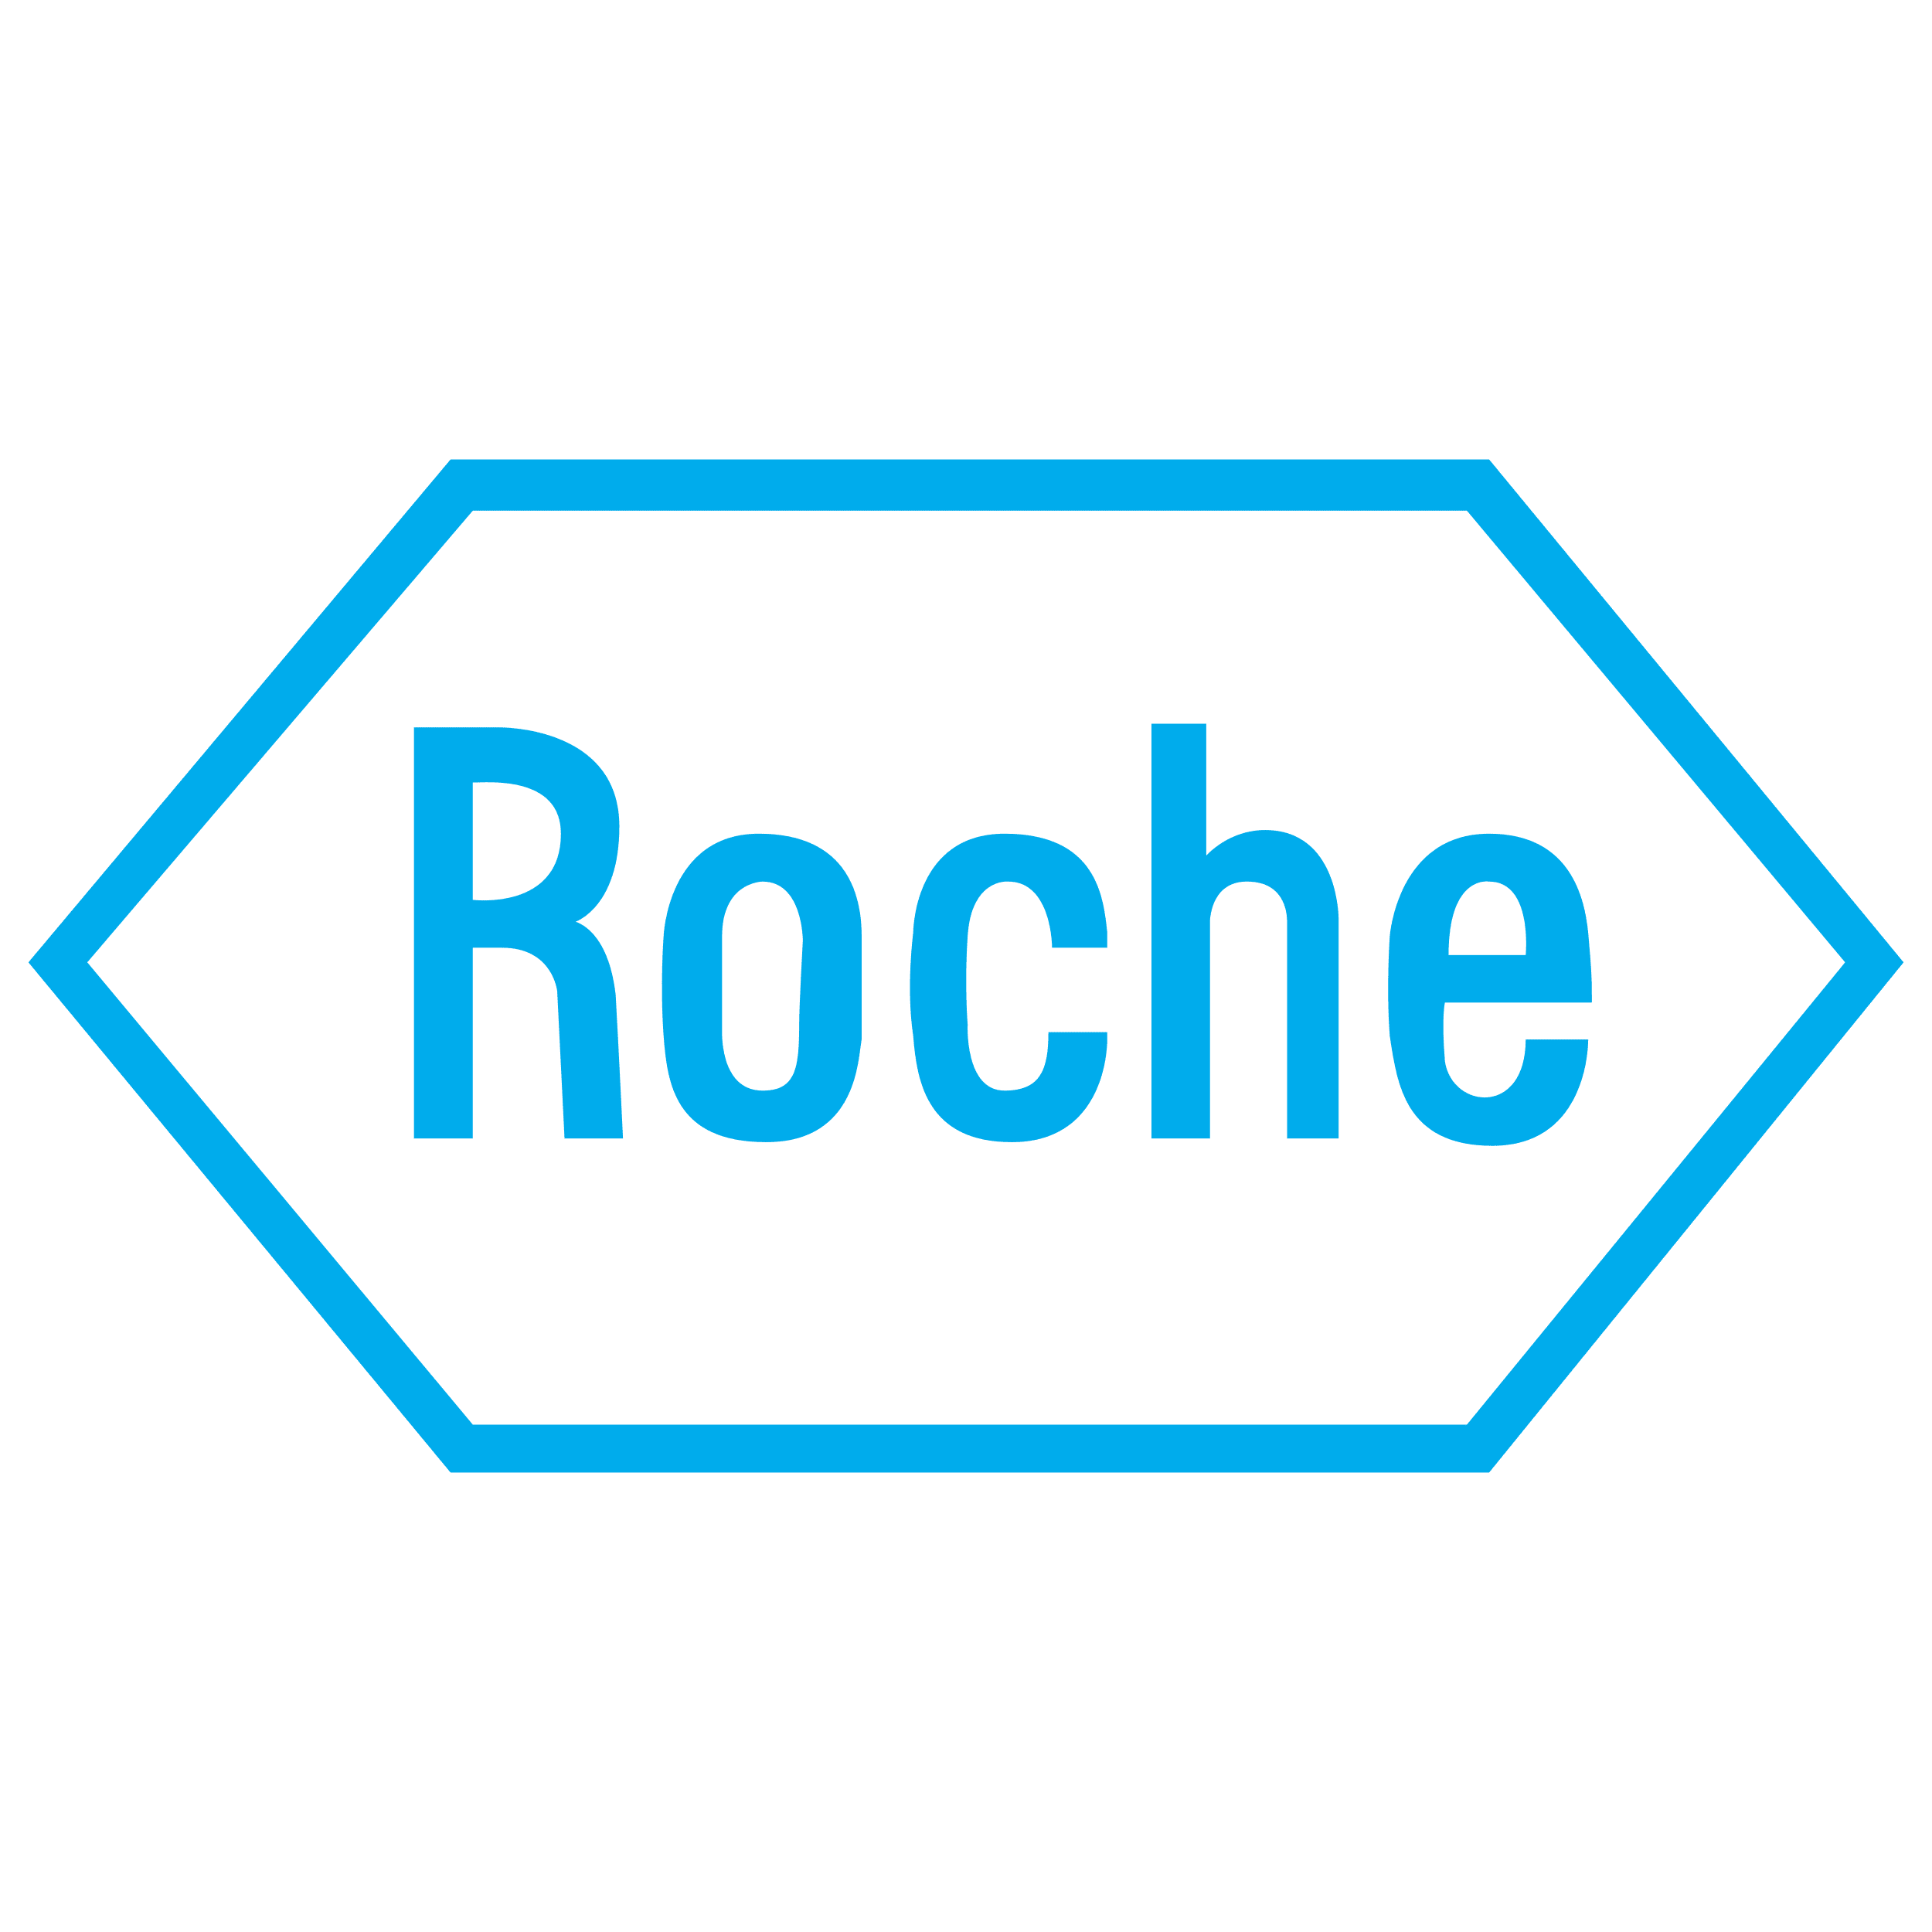 Hoffmann-La Roche